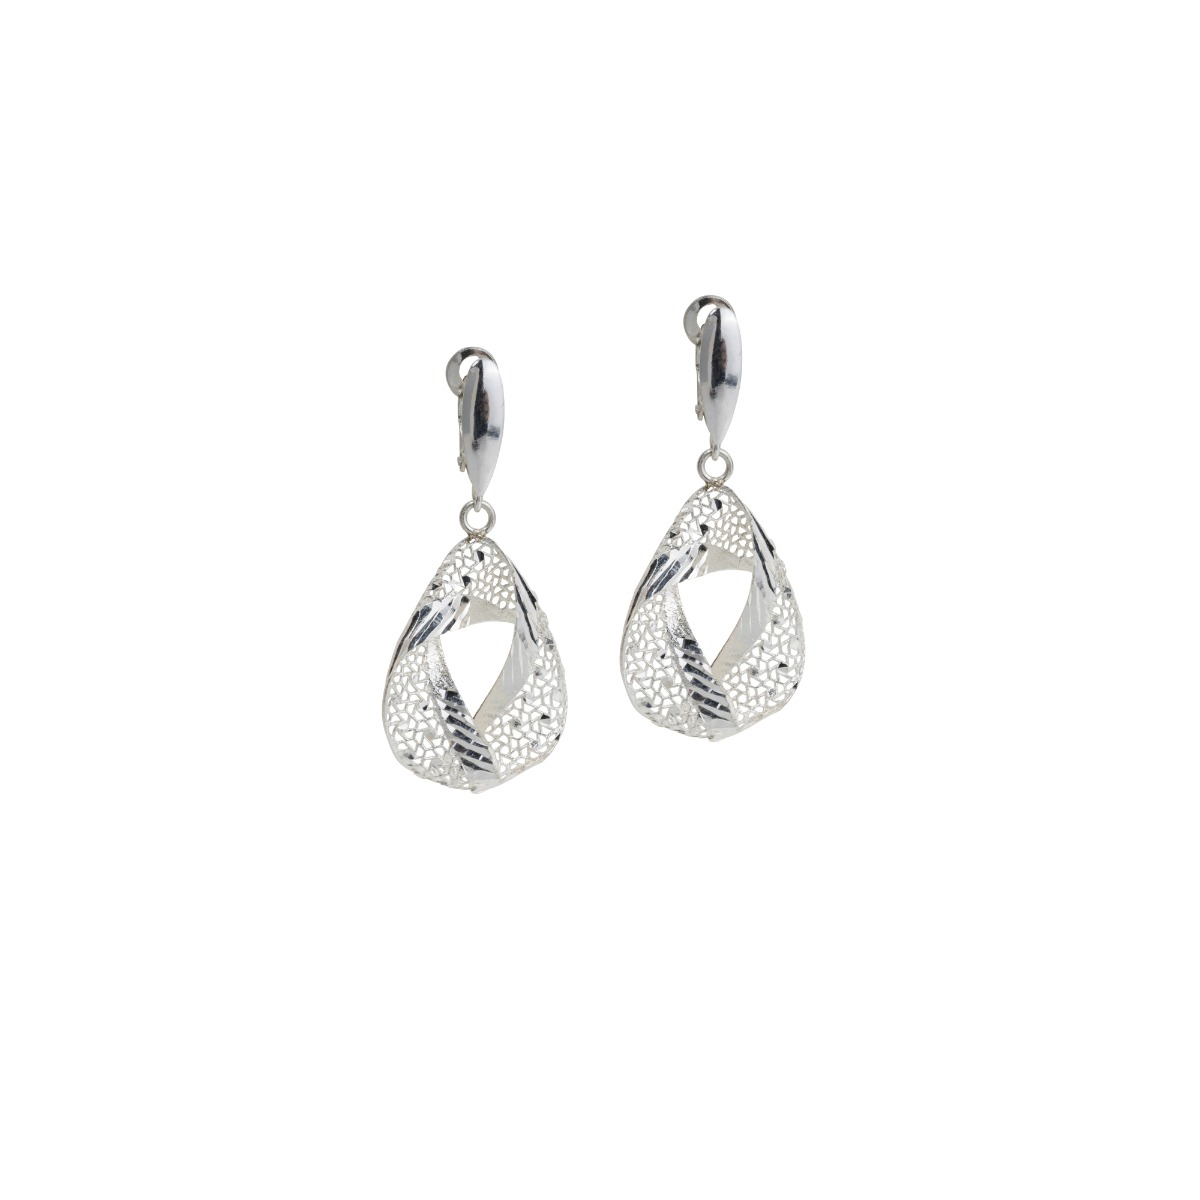 Silver drop earrings with diamond effect